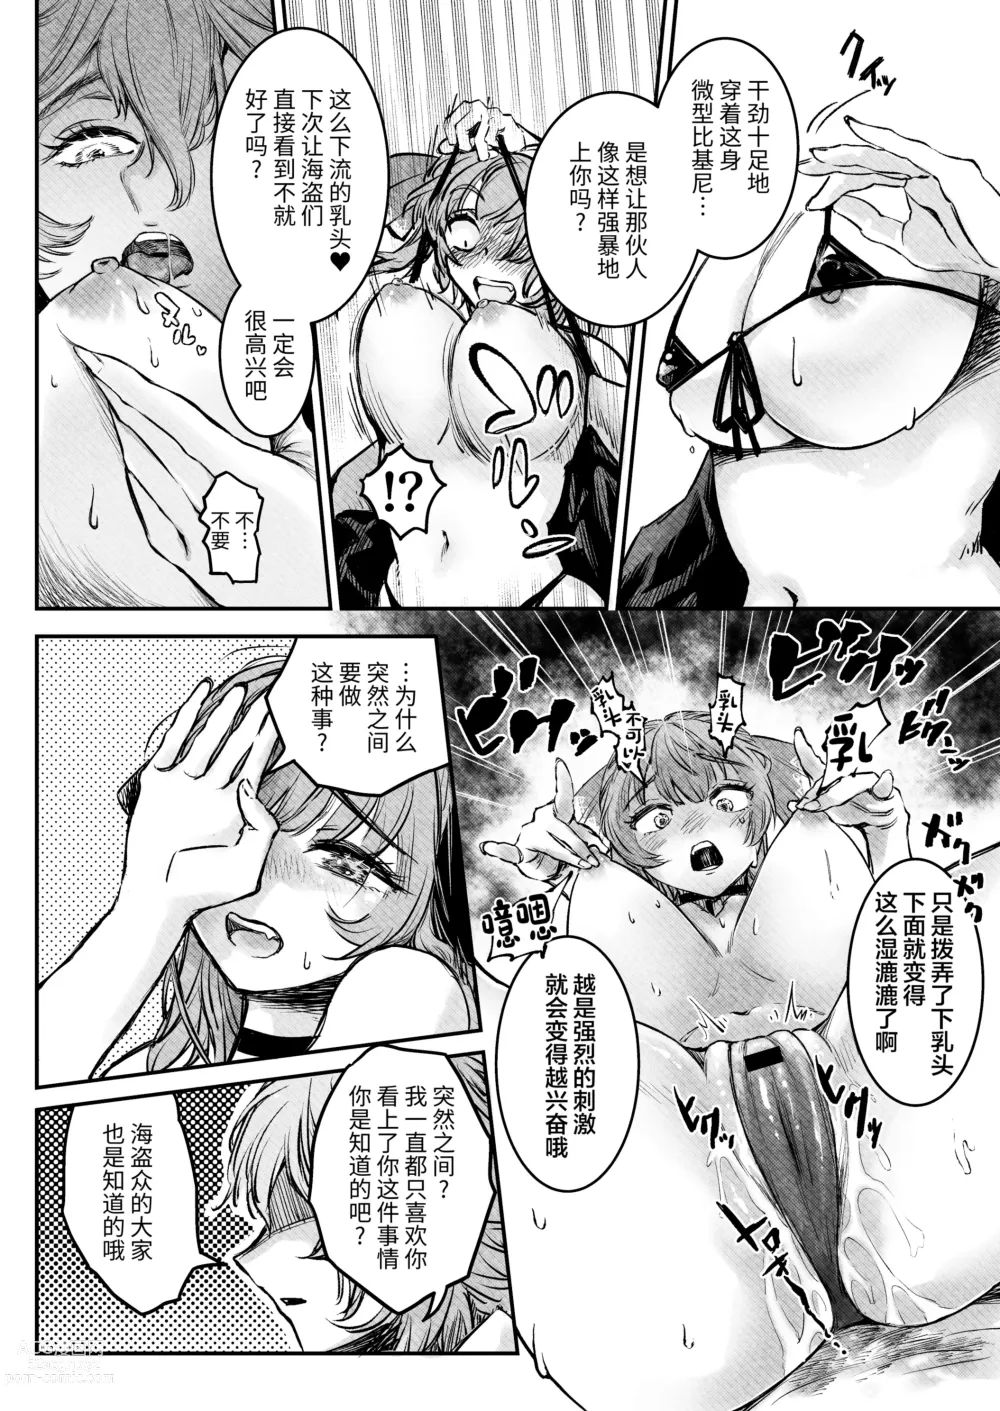 Page 9 of doujinshi Watashi ga Takarabako o Akete ii no ka ne?